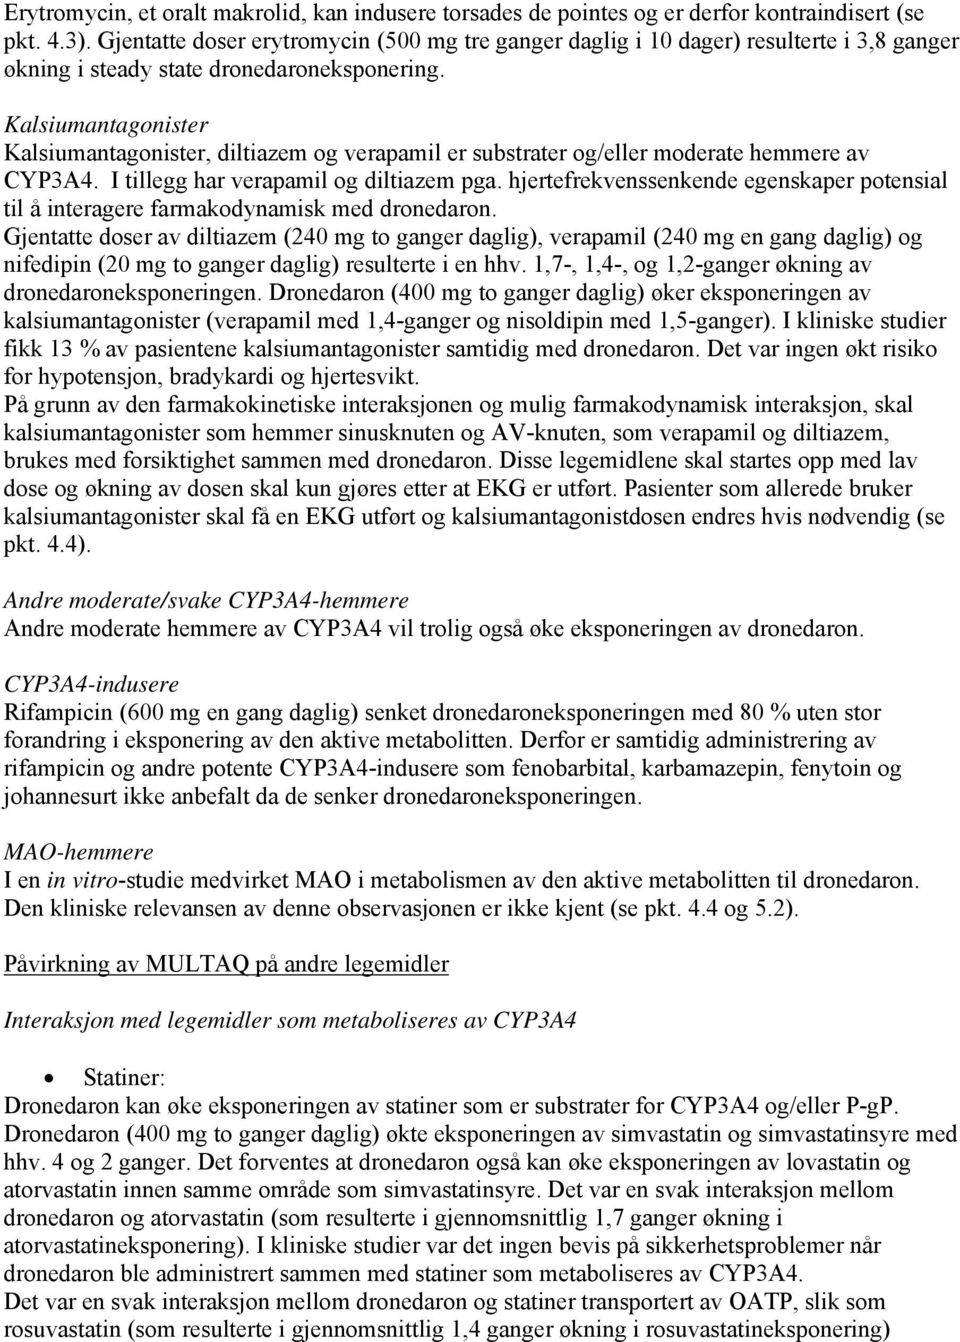 Kalsiumantagonister Kalsiumantagonister, diltiazem og verapamil er substrater og/eller moderate hemmere av CYP3A4. I tillegg har verapamil og diltiazem pga.